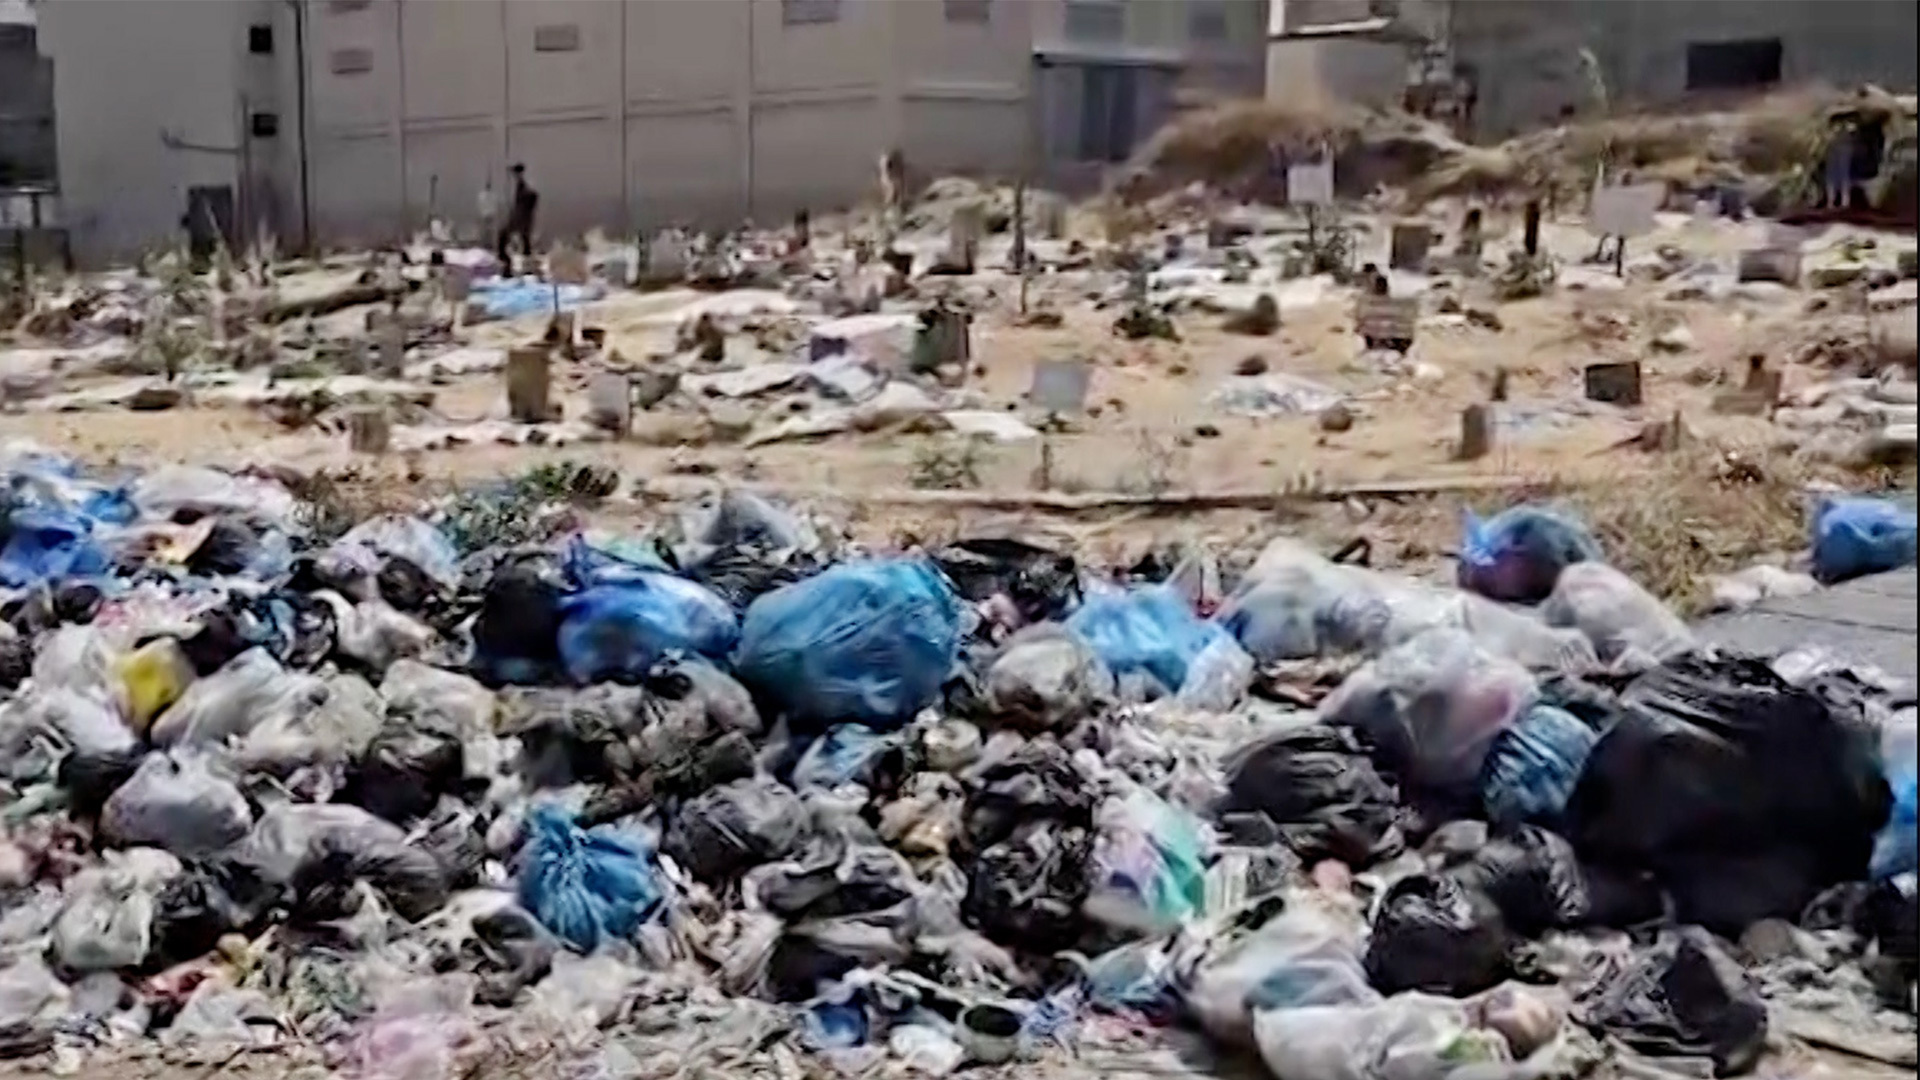 تراكم آلاف الأطنان من النفايات في الشوارع يهدد حياة الغزيين | التقارير الإخبارية – البوكس نيوز